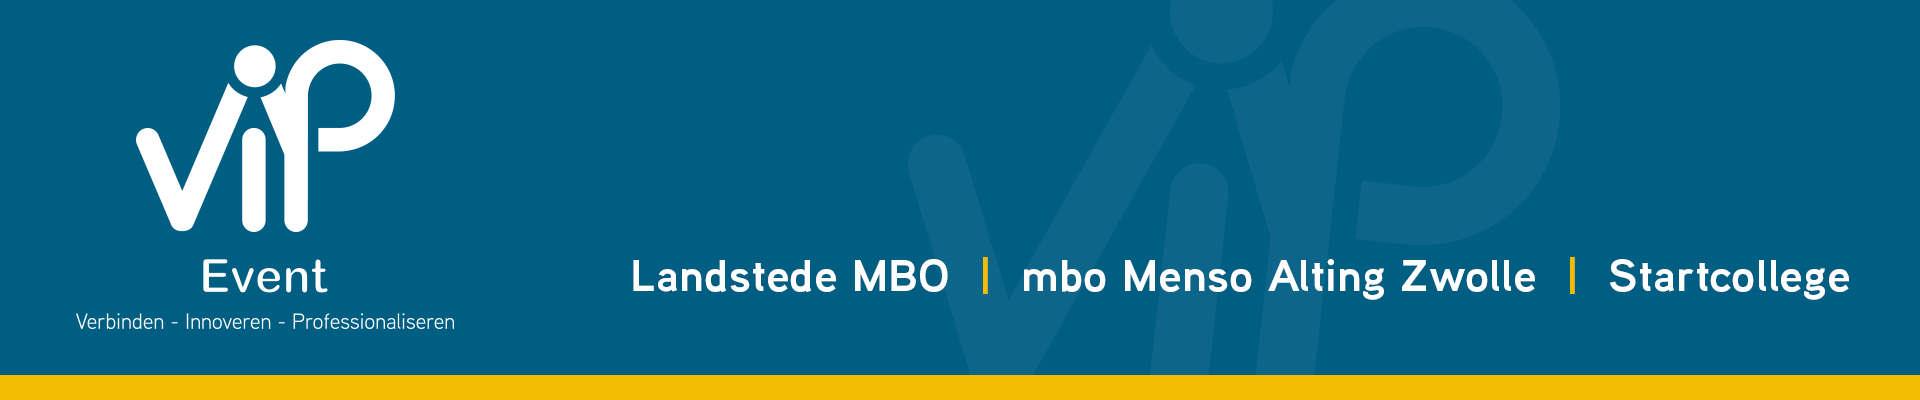 MBO V.I.P.-event 2020 - aanmelden deelsessieleider